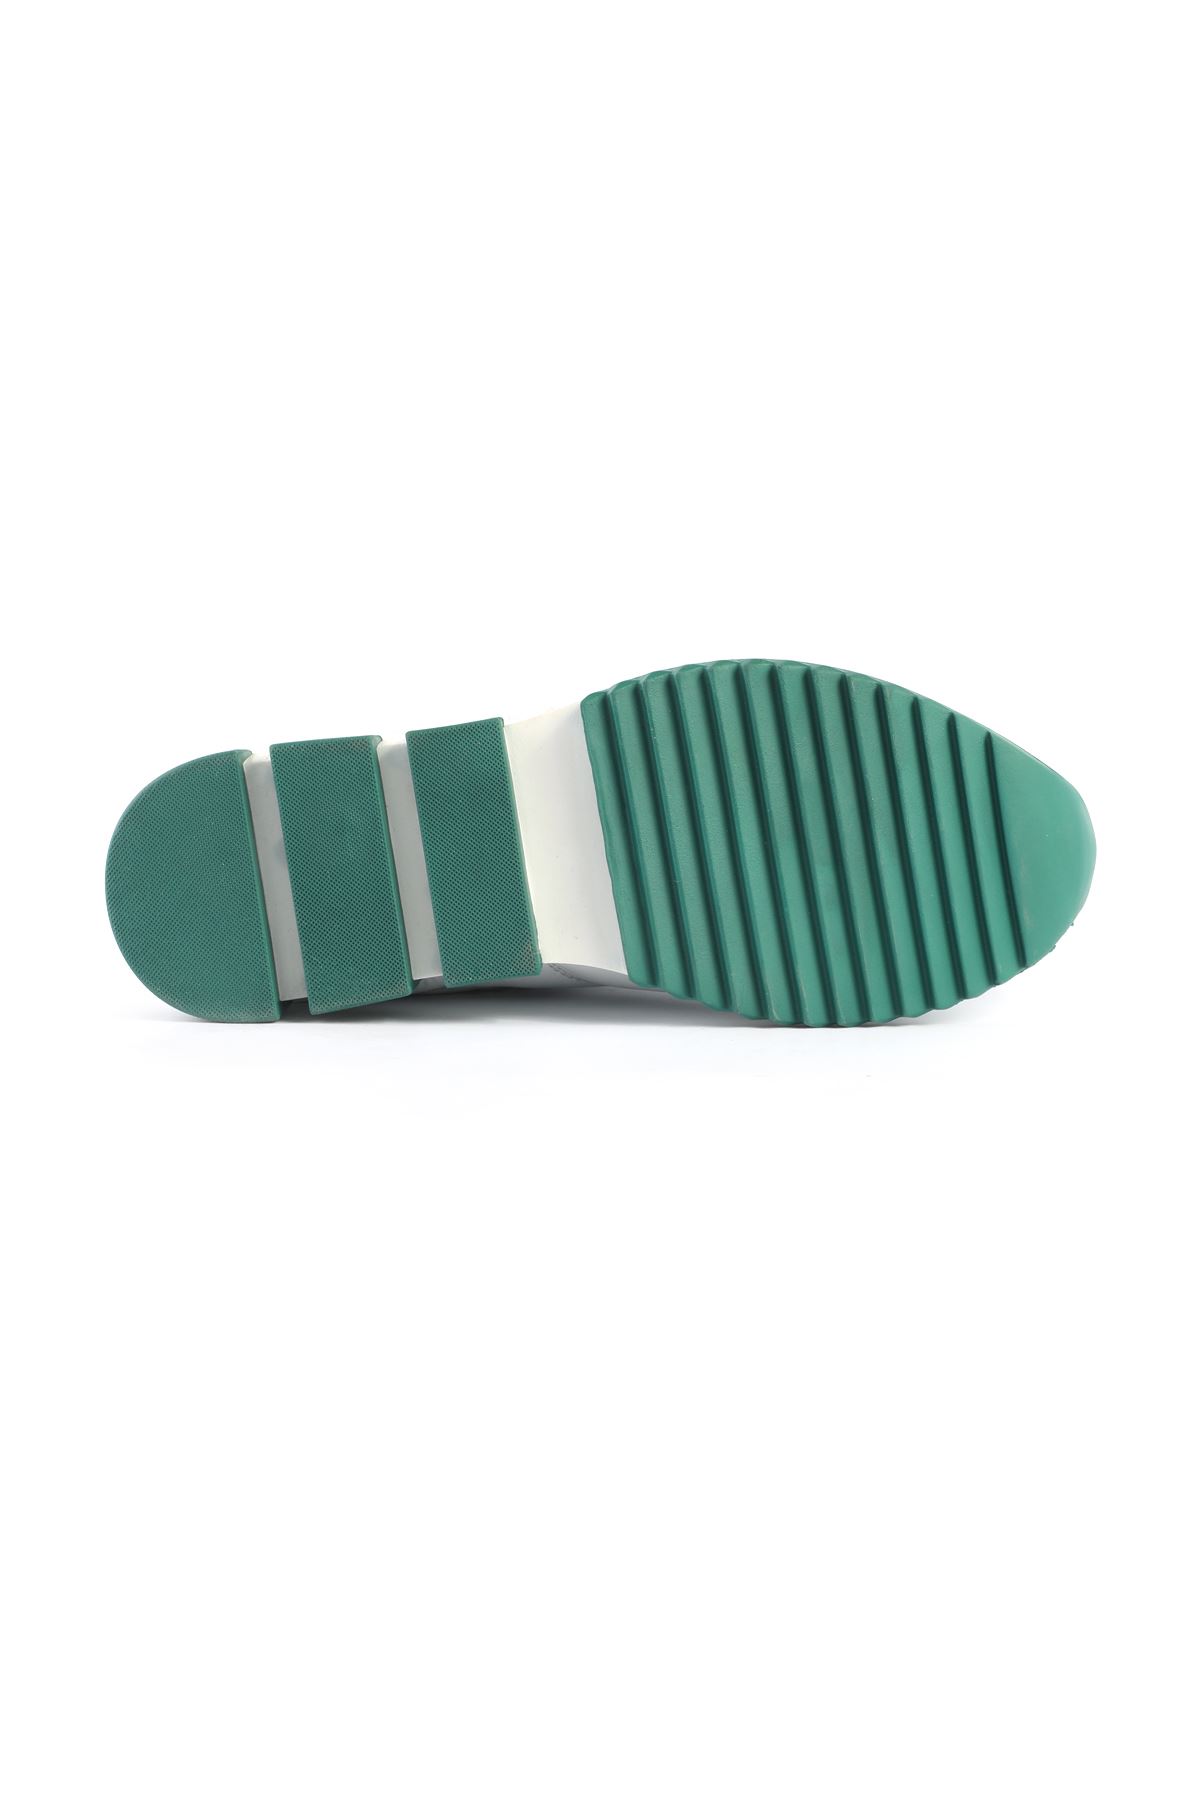 Libero 3392 B.Yeşil Spor Ayakkabı 